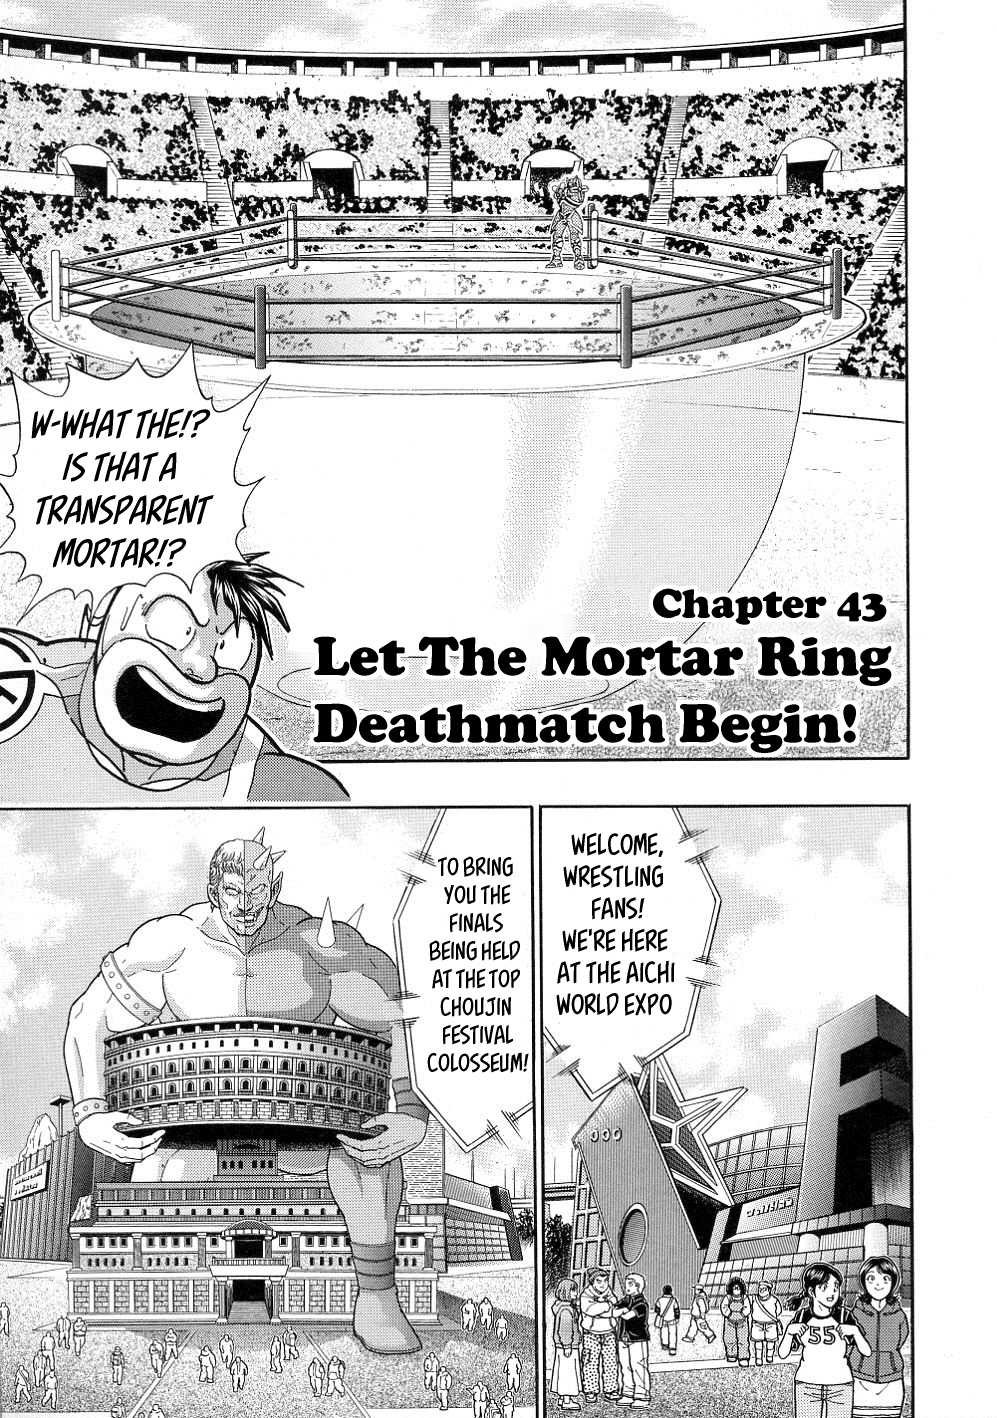 Kinnikuman Nisei ~All Out Chojin Assault~ Vol. 3 Ch. 43 Let The Mortar Ring Deathmatch Begin!